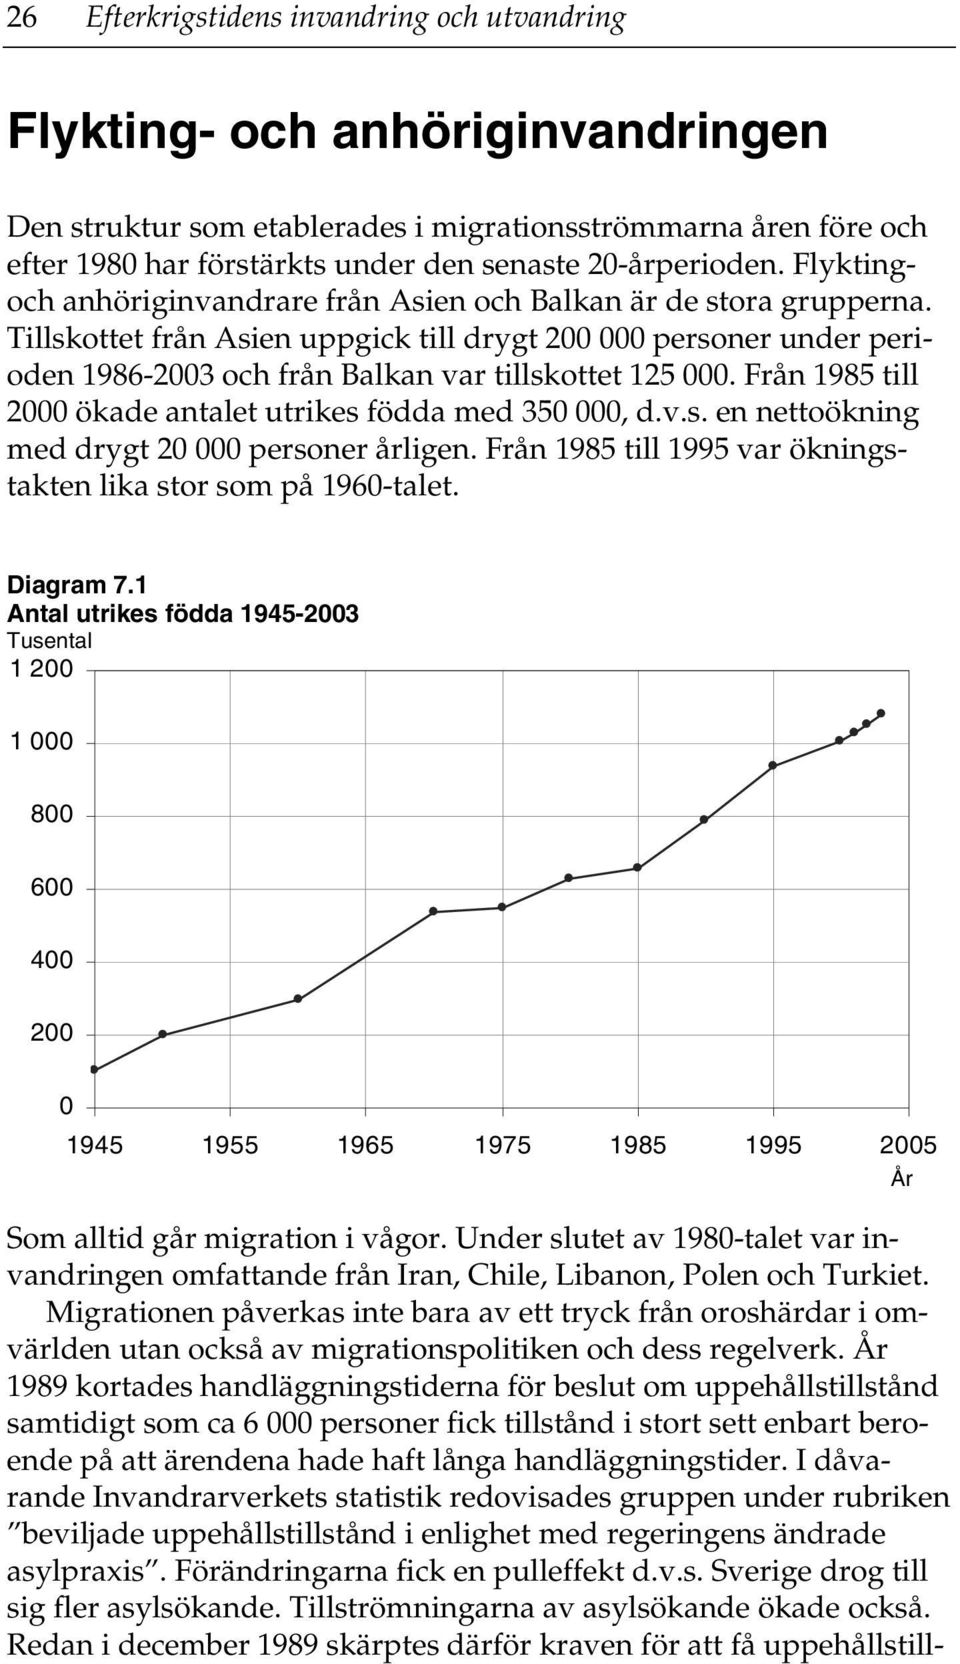 Tillskottet från Asien uppgick till drygt 200 000 personer under perioden 1986-2003 och från Balkan var tillskottet 125 000. Från 1985 till 2000 ökade antalet utrikes födda med 350 000, d.v.s. en nettoökning med drygt 20 000 personer årligen.